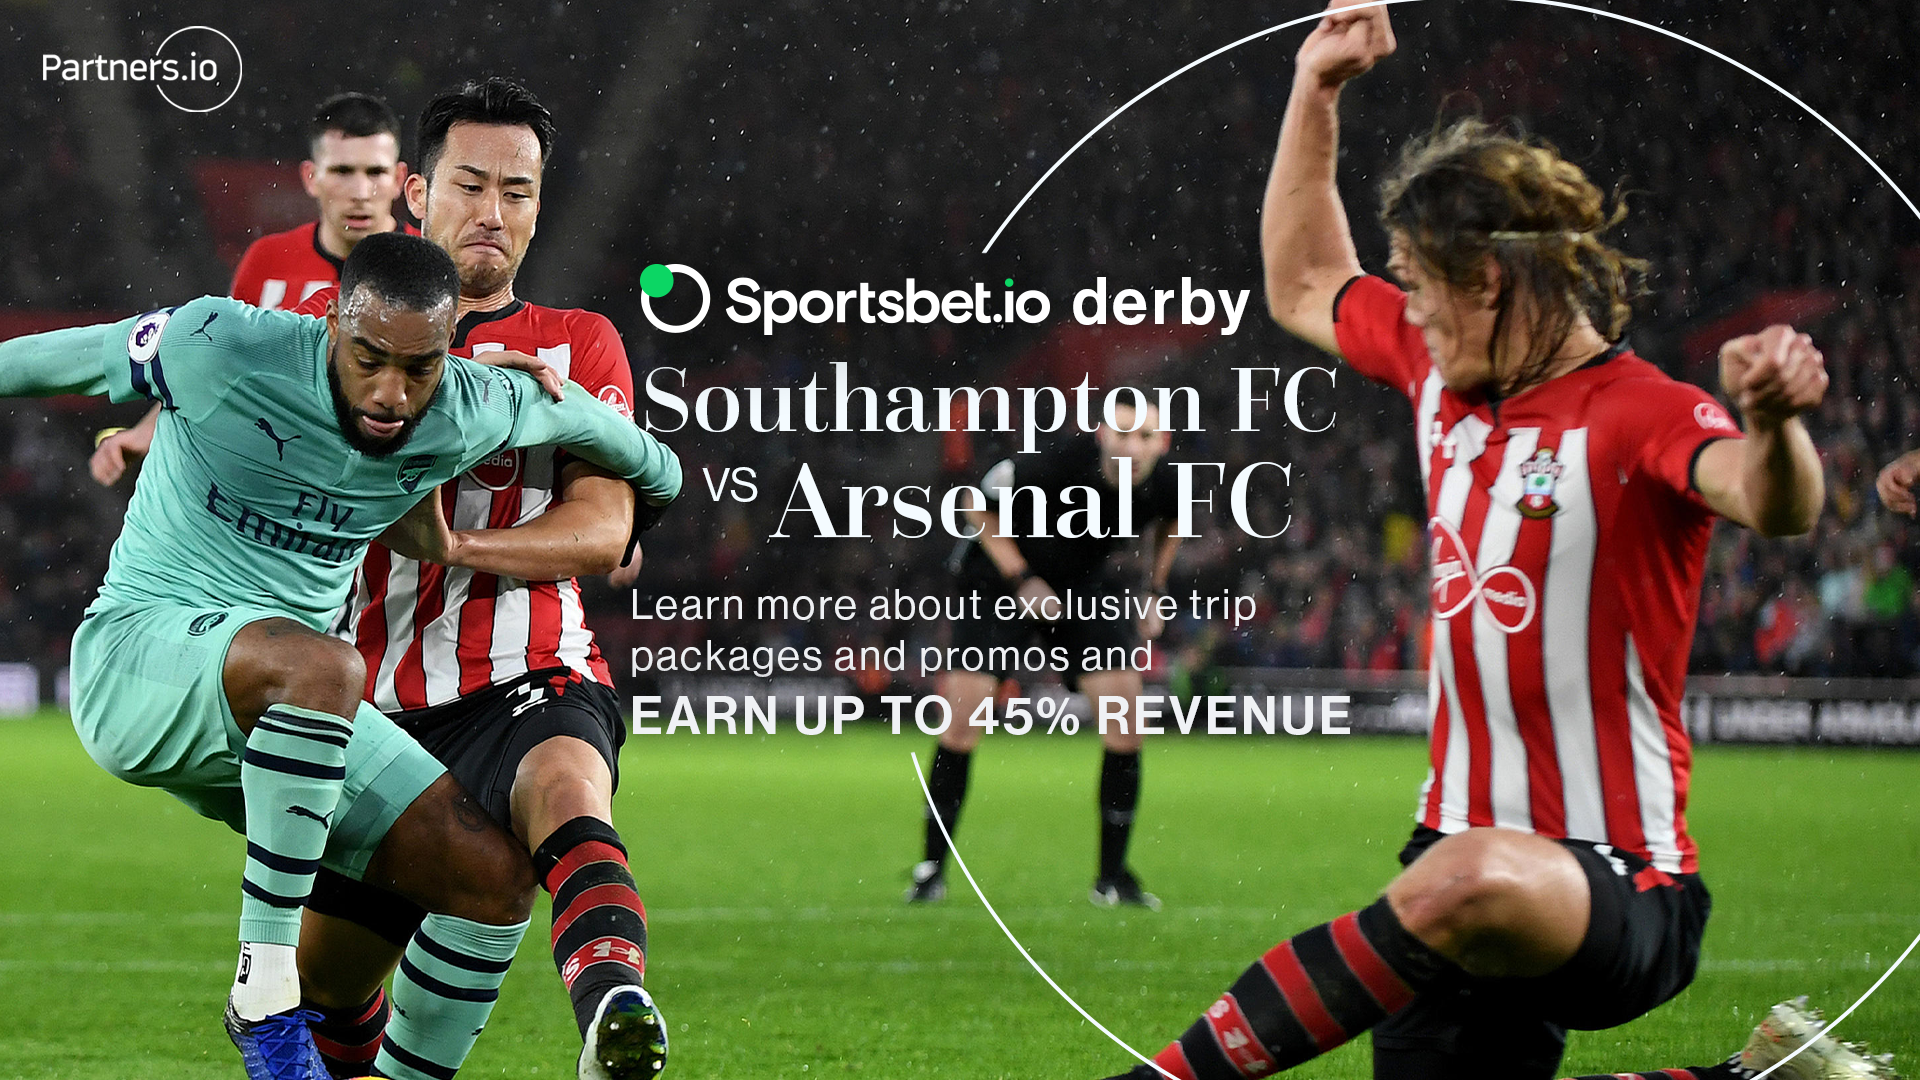 Sportsbet.io derby for Southampton FC vs Arsenal FC